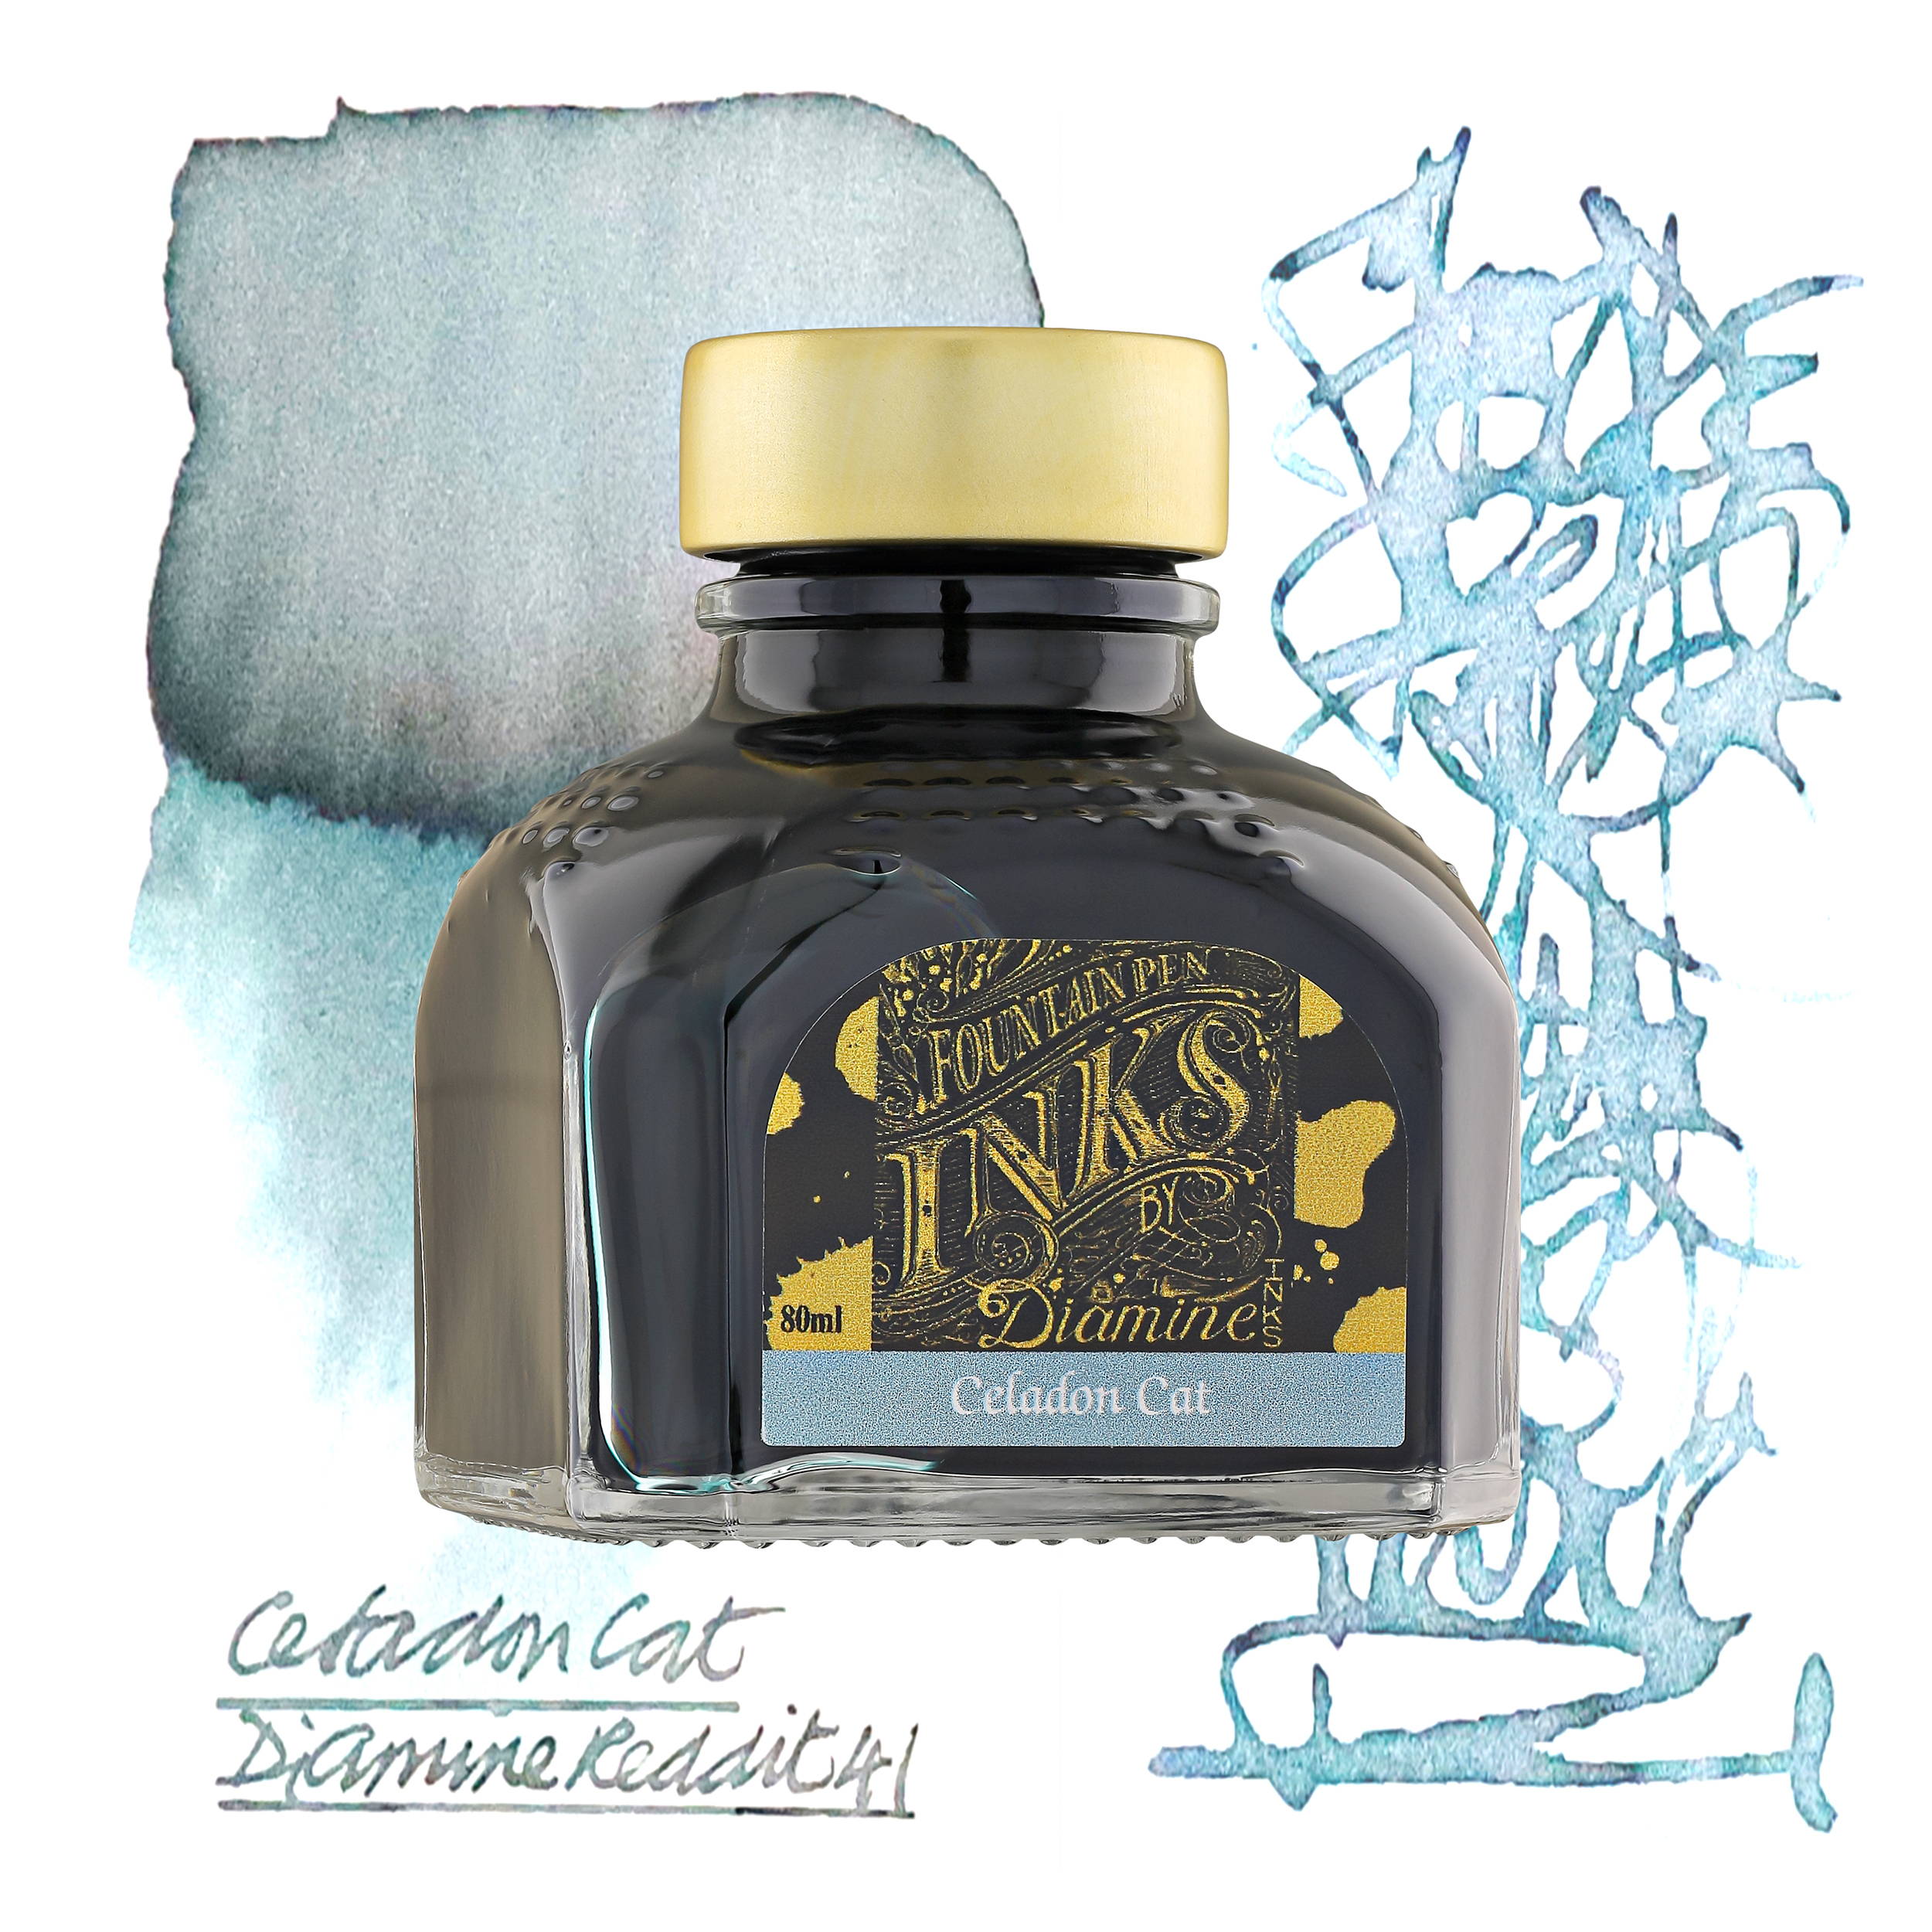 Diamine Celadon Cat 80ml bottled ink